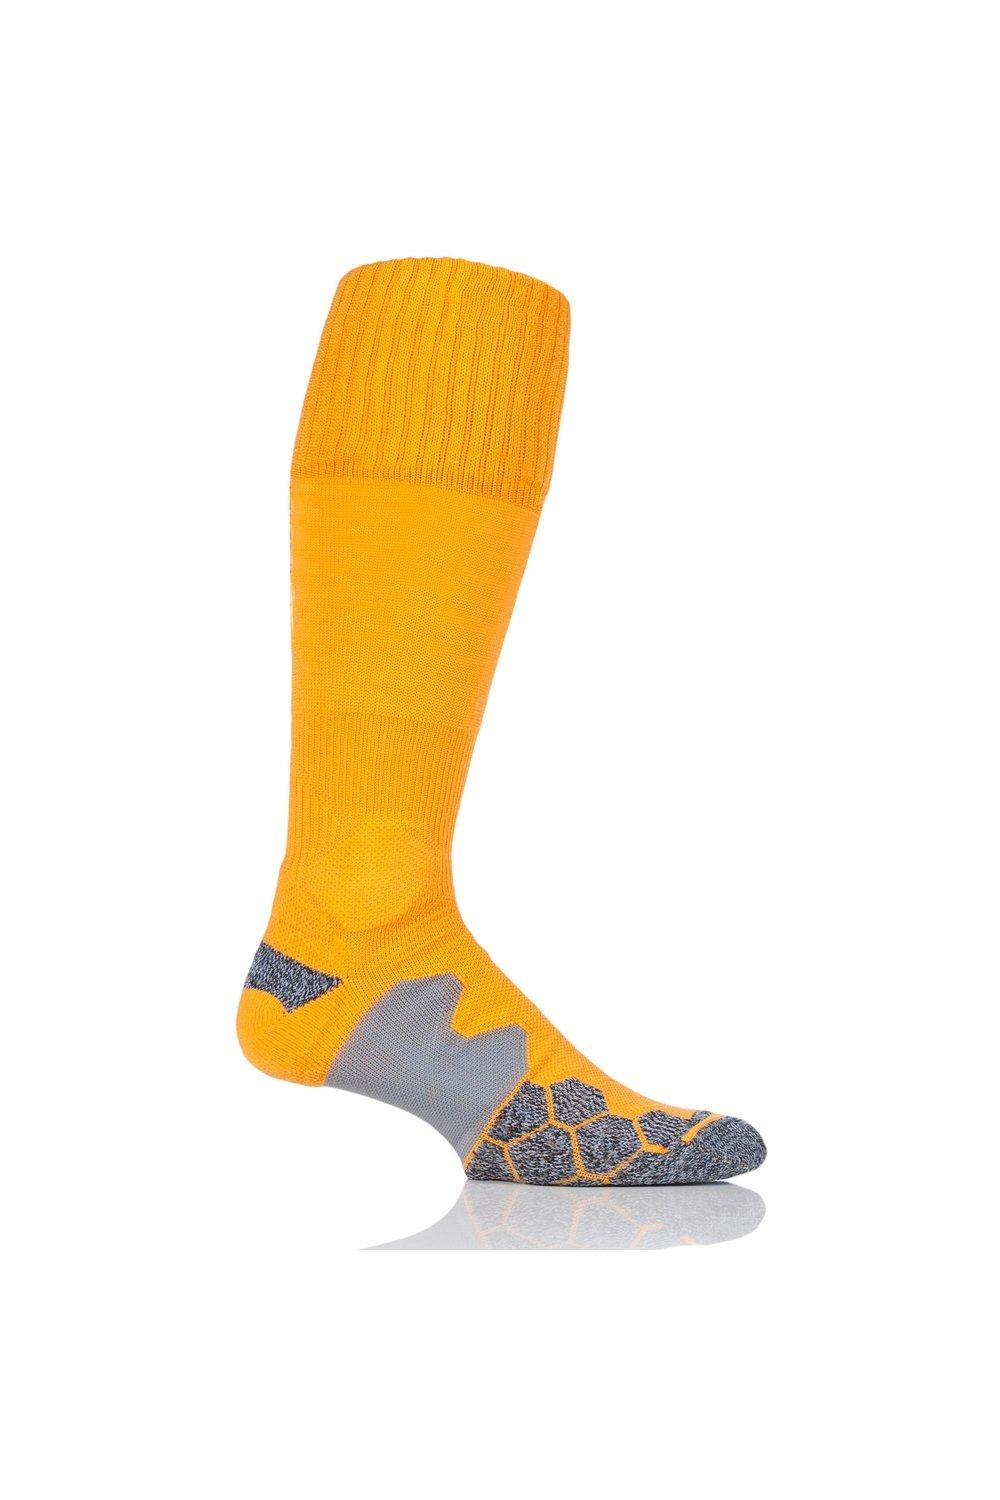 1 пара технических футбольных носков с мягкой подкладкой, произведенных в Великобритании SOCKSHOP of London, золото